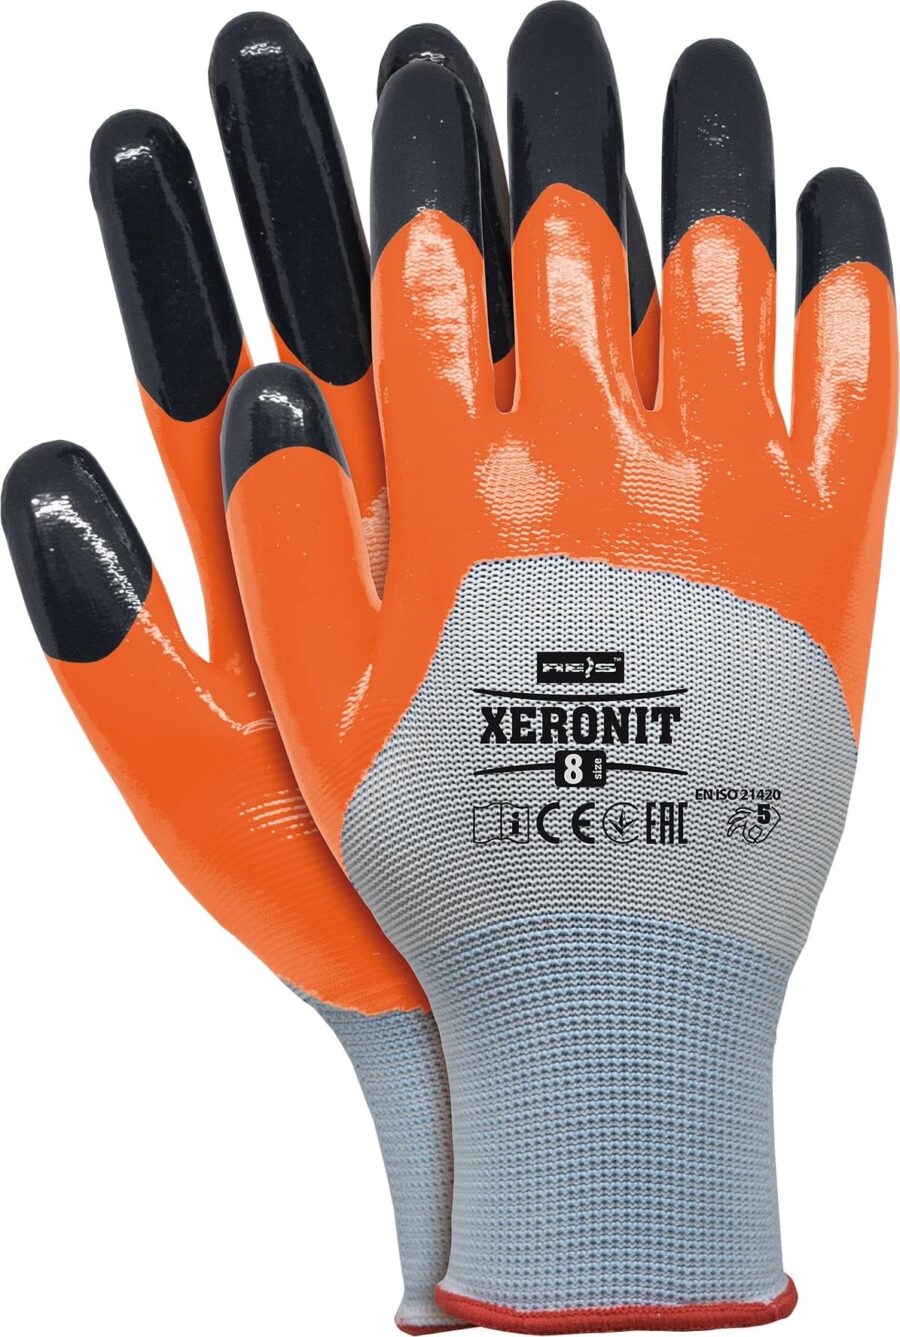 Pracovní rukavice nitrilové XERONIT ORANGE